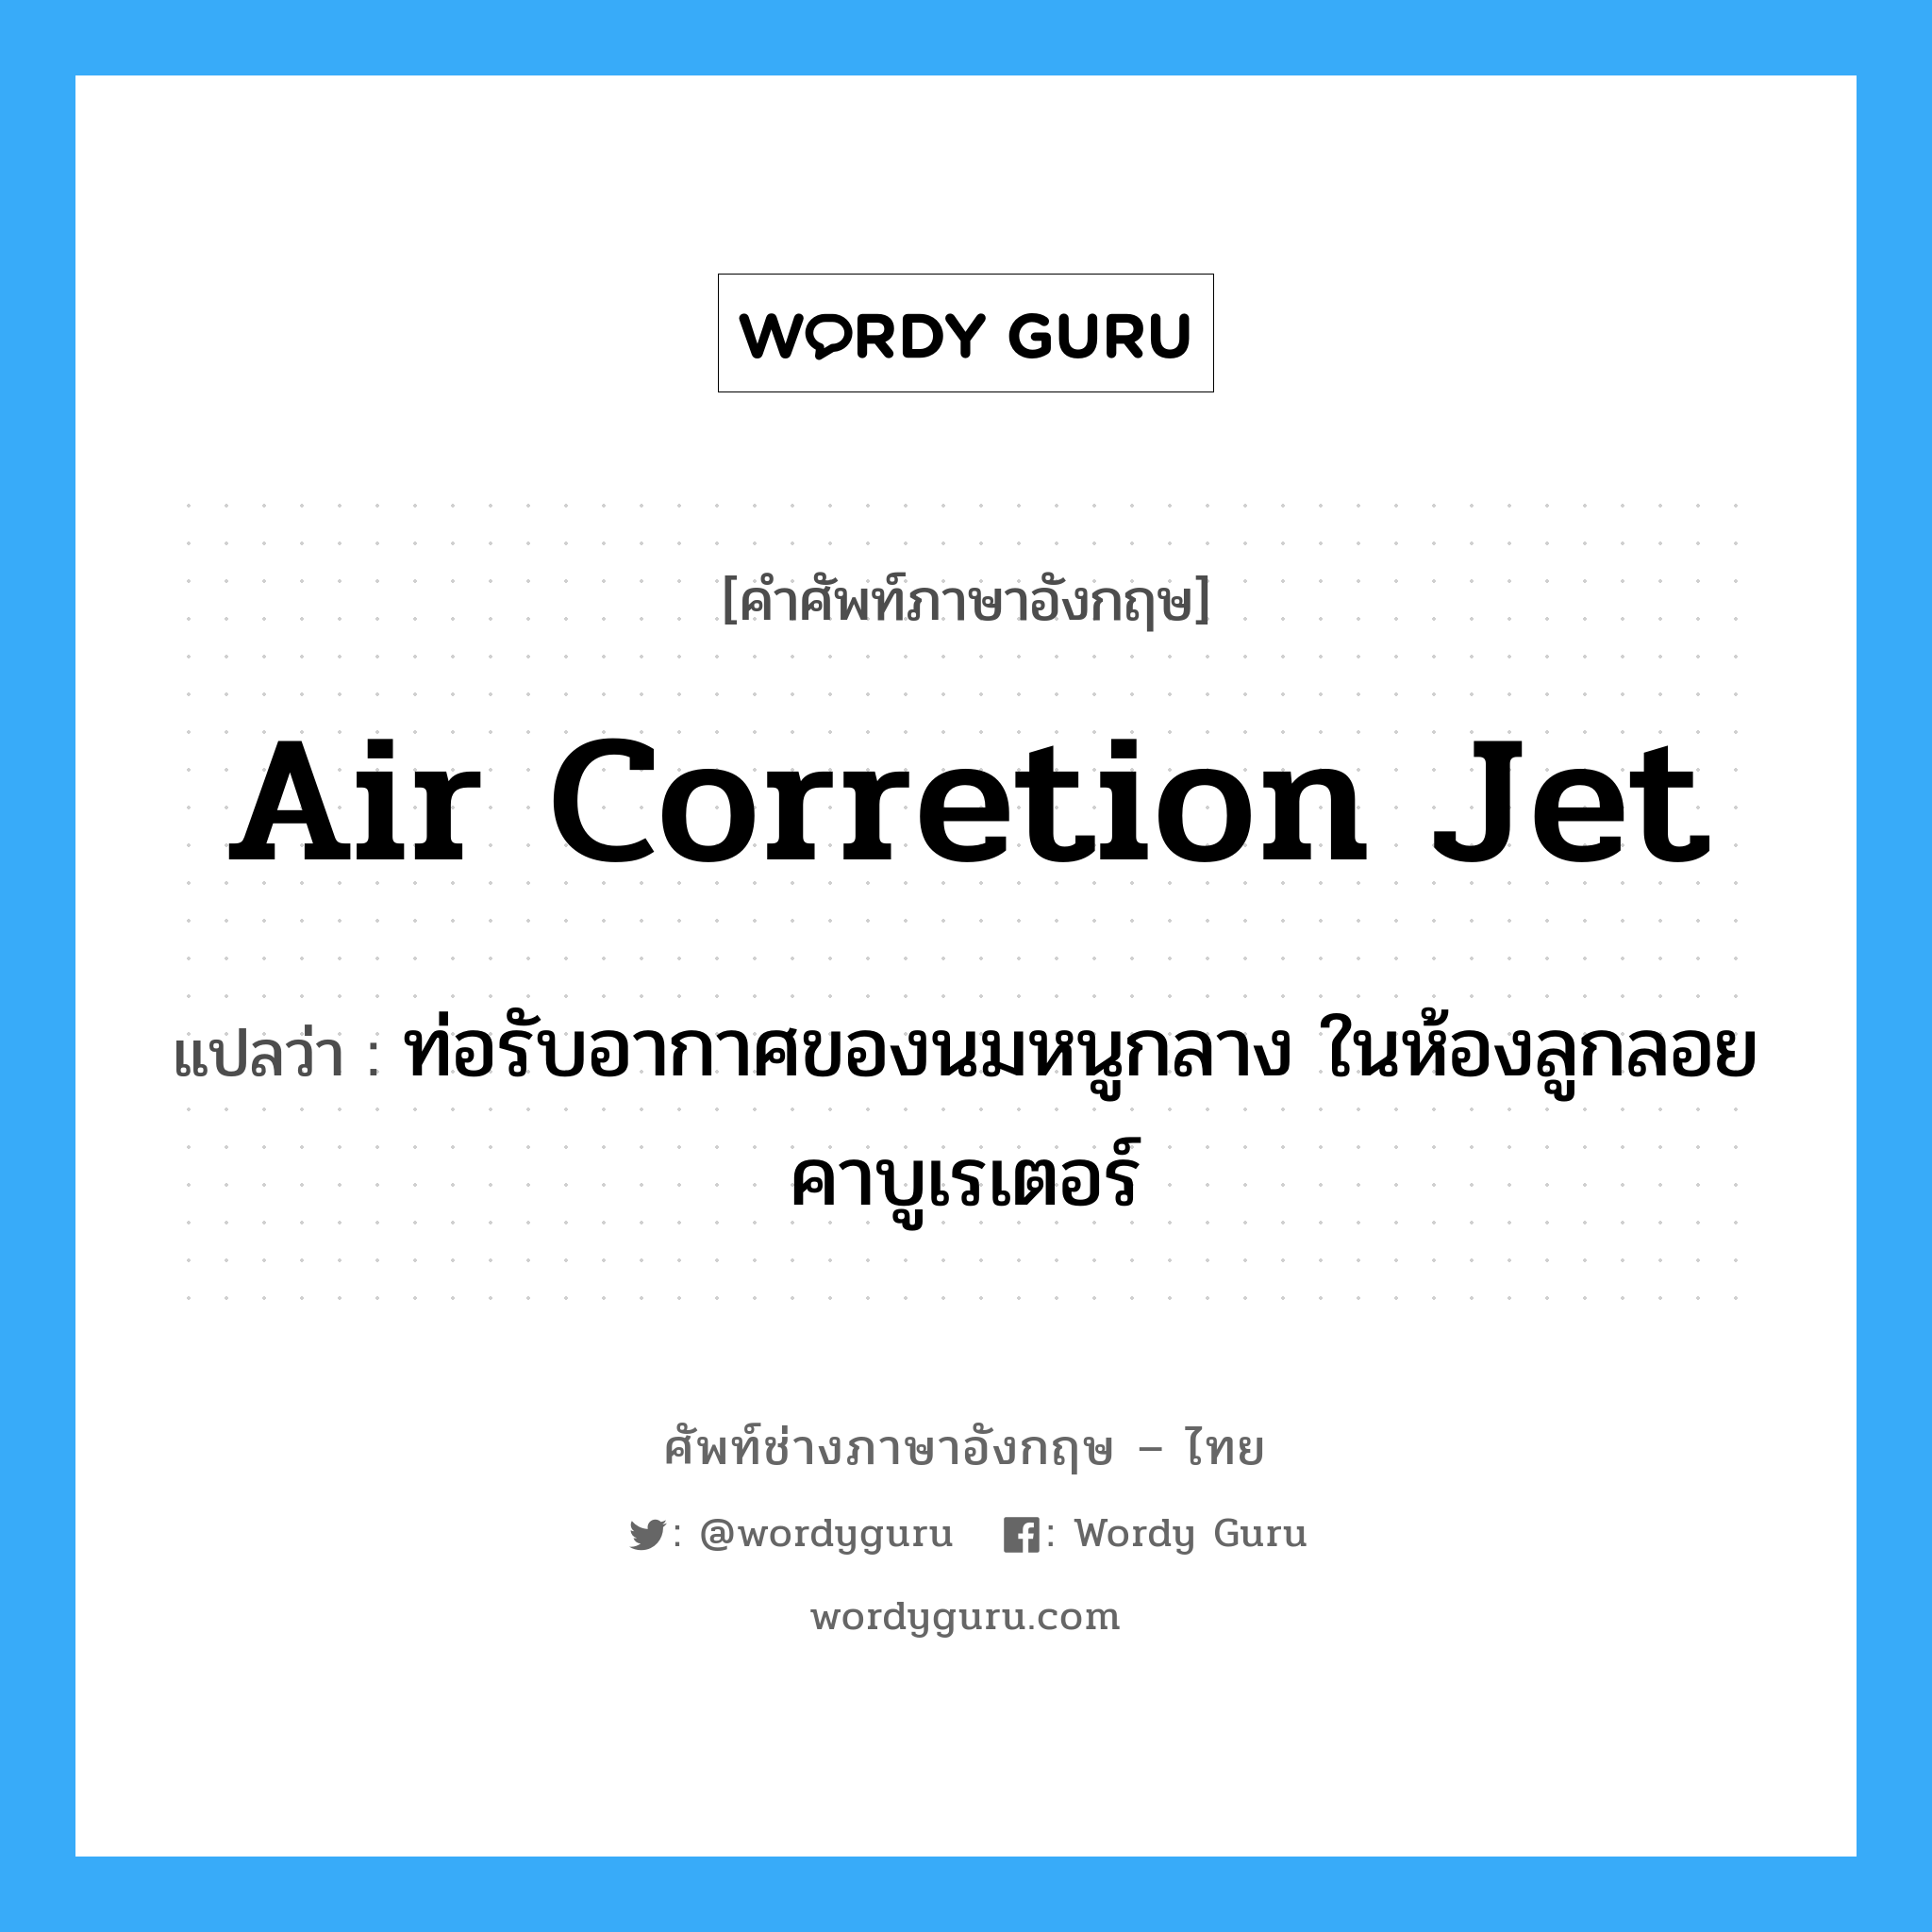 air corretion jet แปลว่า?, คำศัพท์ช่างภาษาอังกฤษ - ไทย air corretion jet คำศัพท์ภาษาอังกฤษ air corretion jet แปลว่า ท่อรับอากาศของนมหนูกลาง ในห้องลูกลอยคาบูเรเตอร์